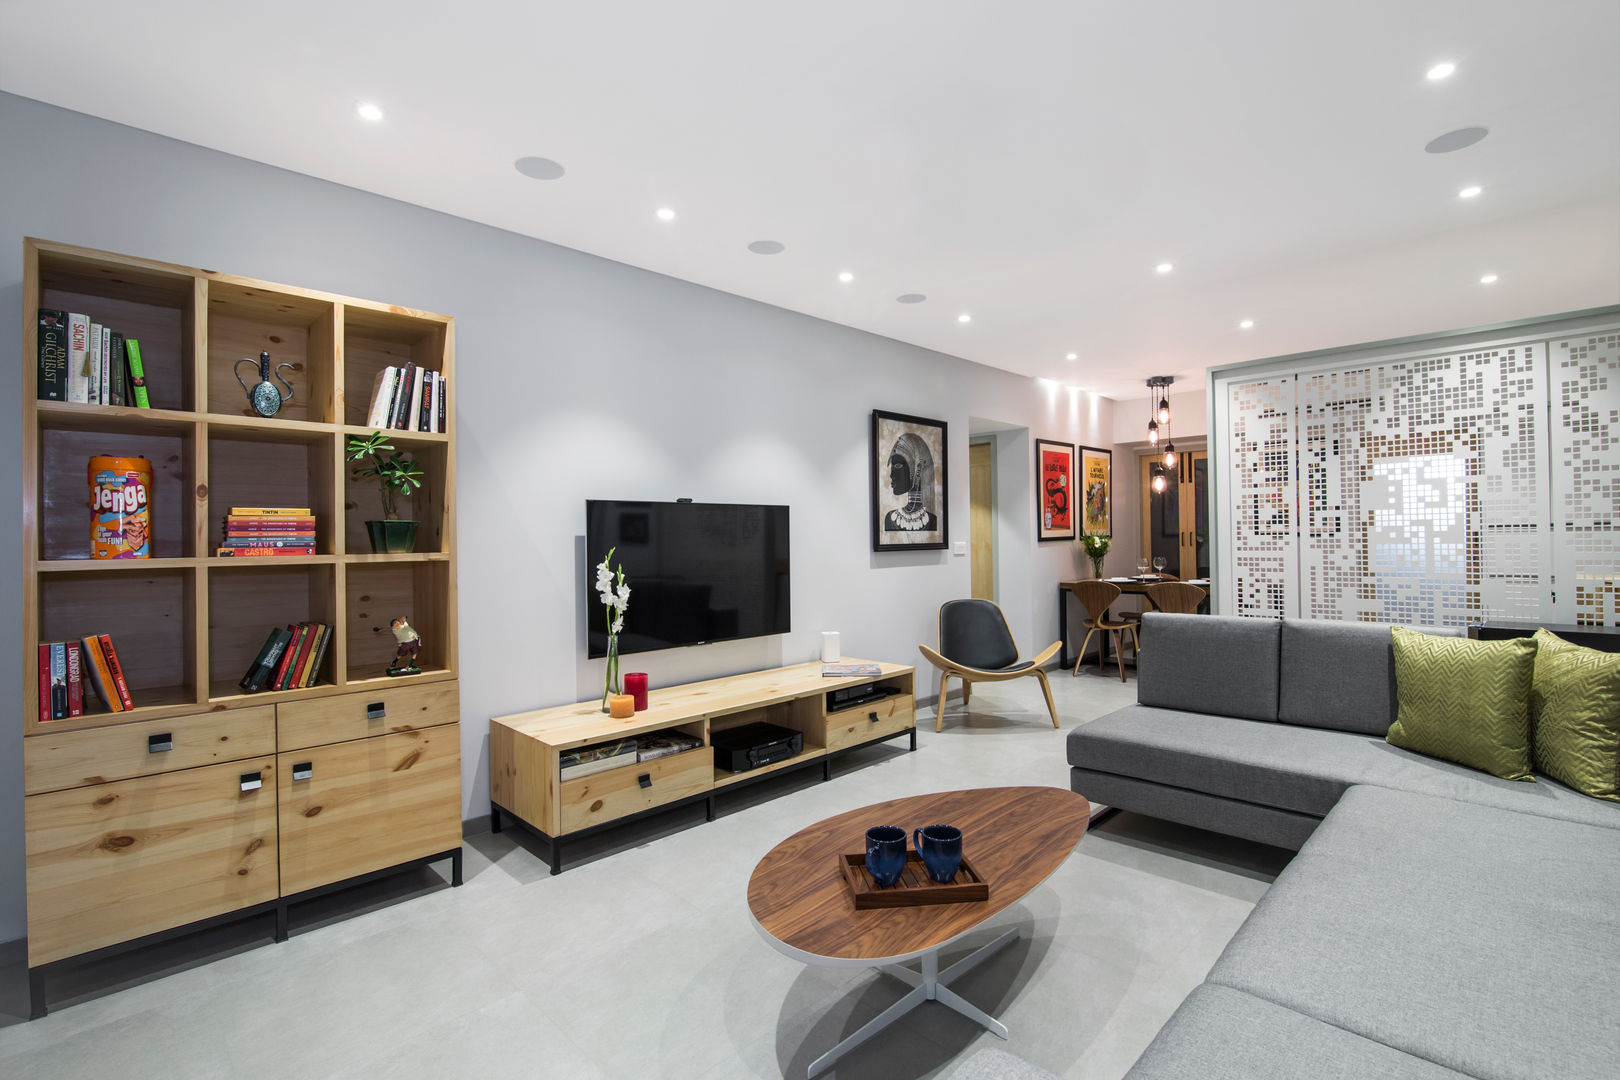 Residential - Lower Parel, Nitido Interior design Nitido Interior design Salones modernos Azulejos Muebles de televisión y dispositivos electrónicos